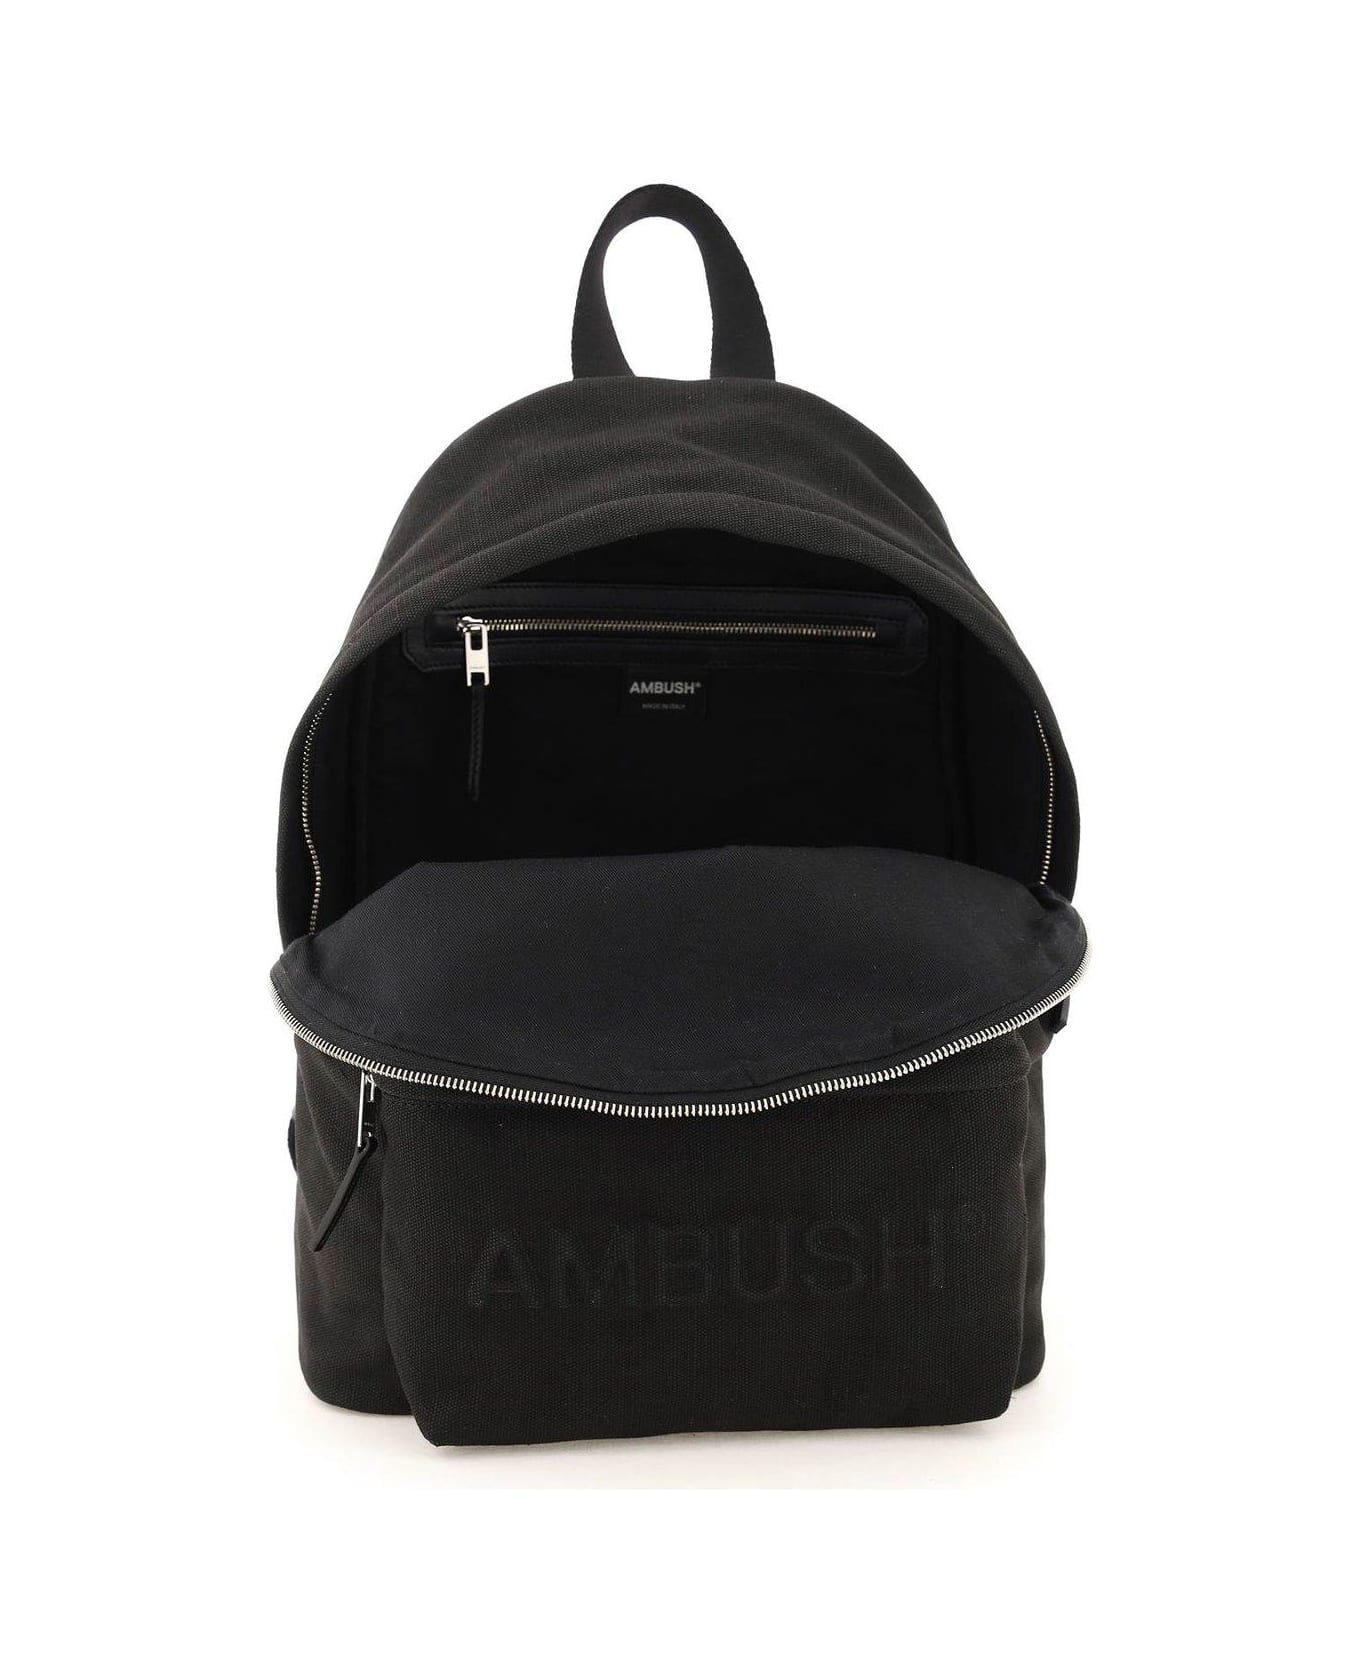 AMBUSH Logo Embossed Backpack - Nero/argento